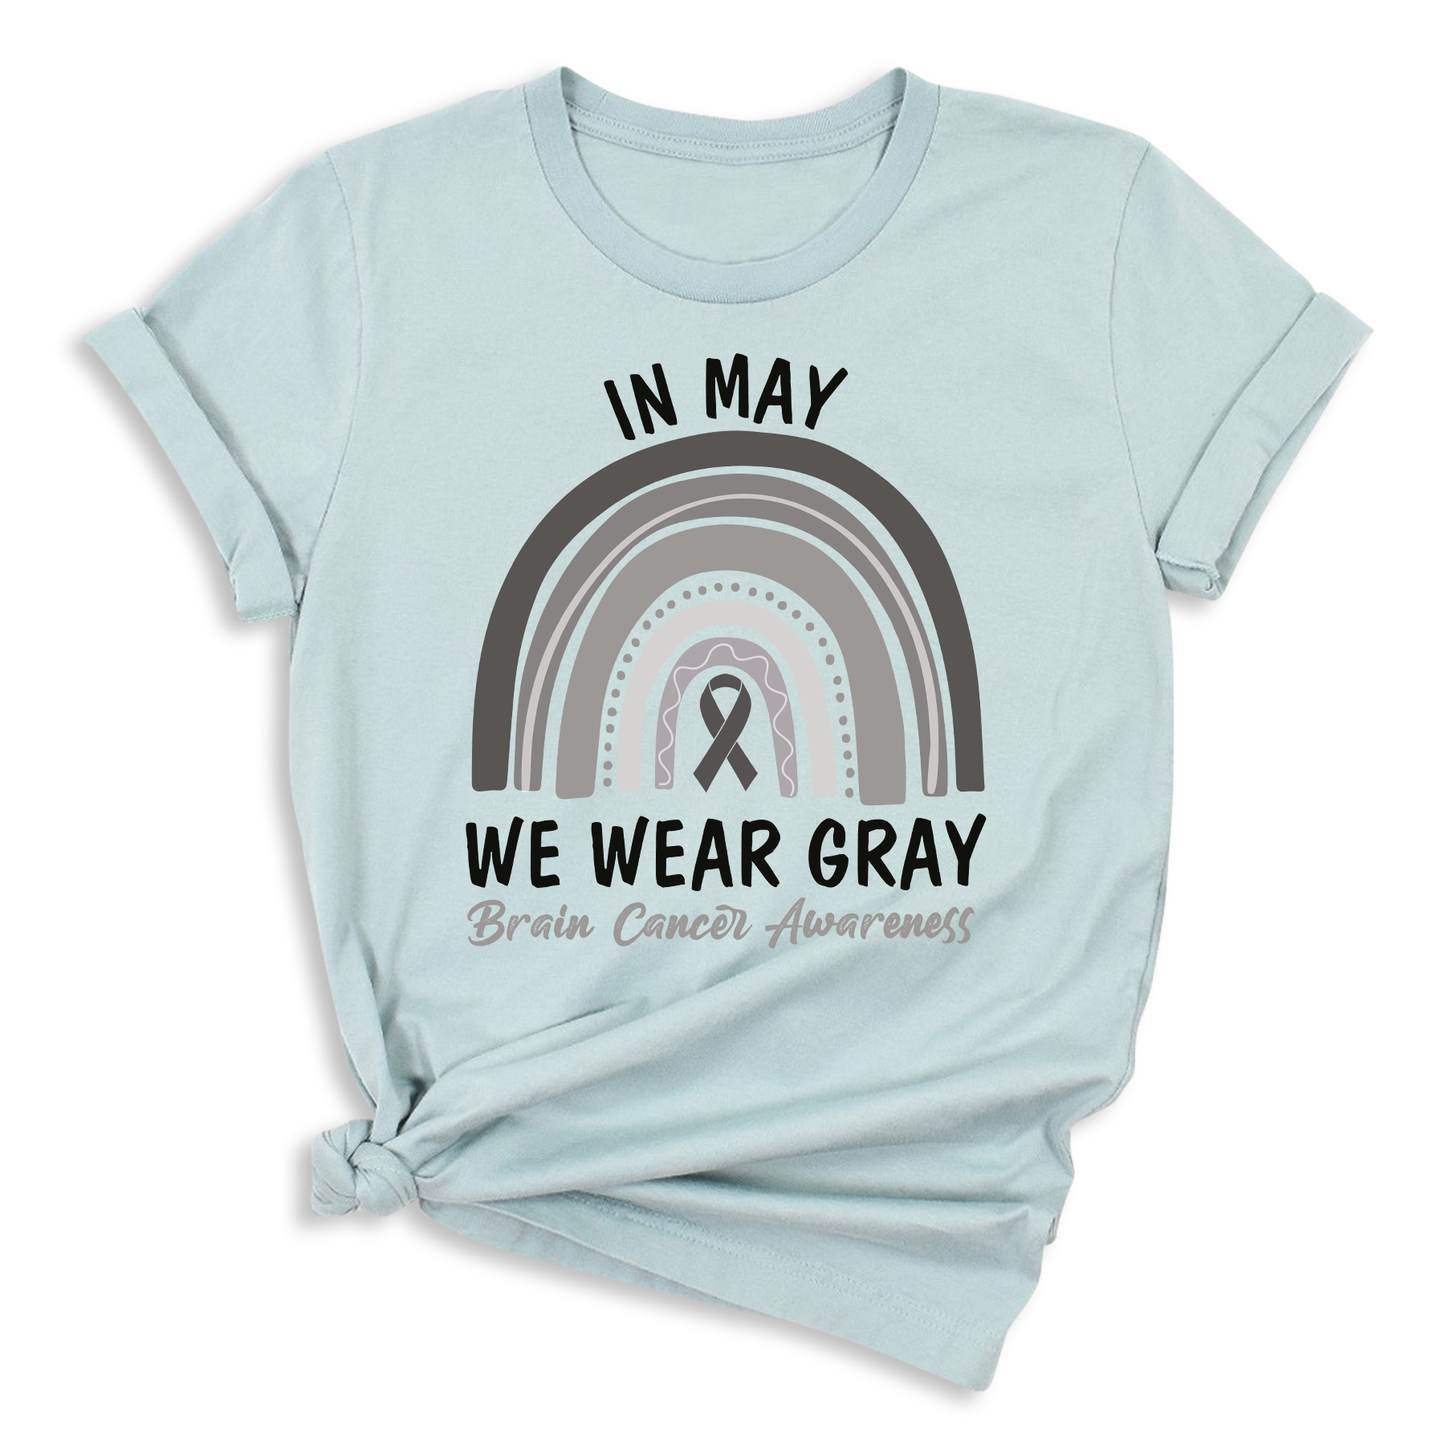  Brain Cancer Awareness Shirts